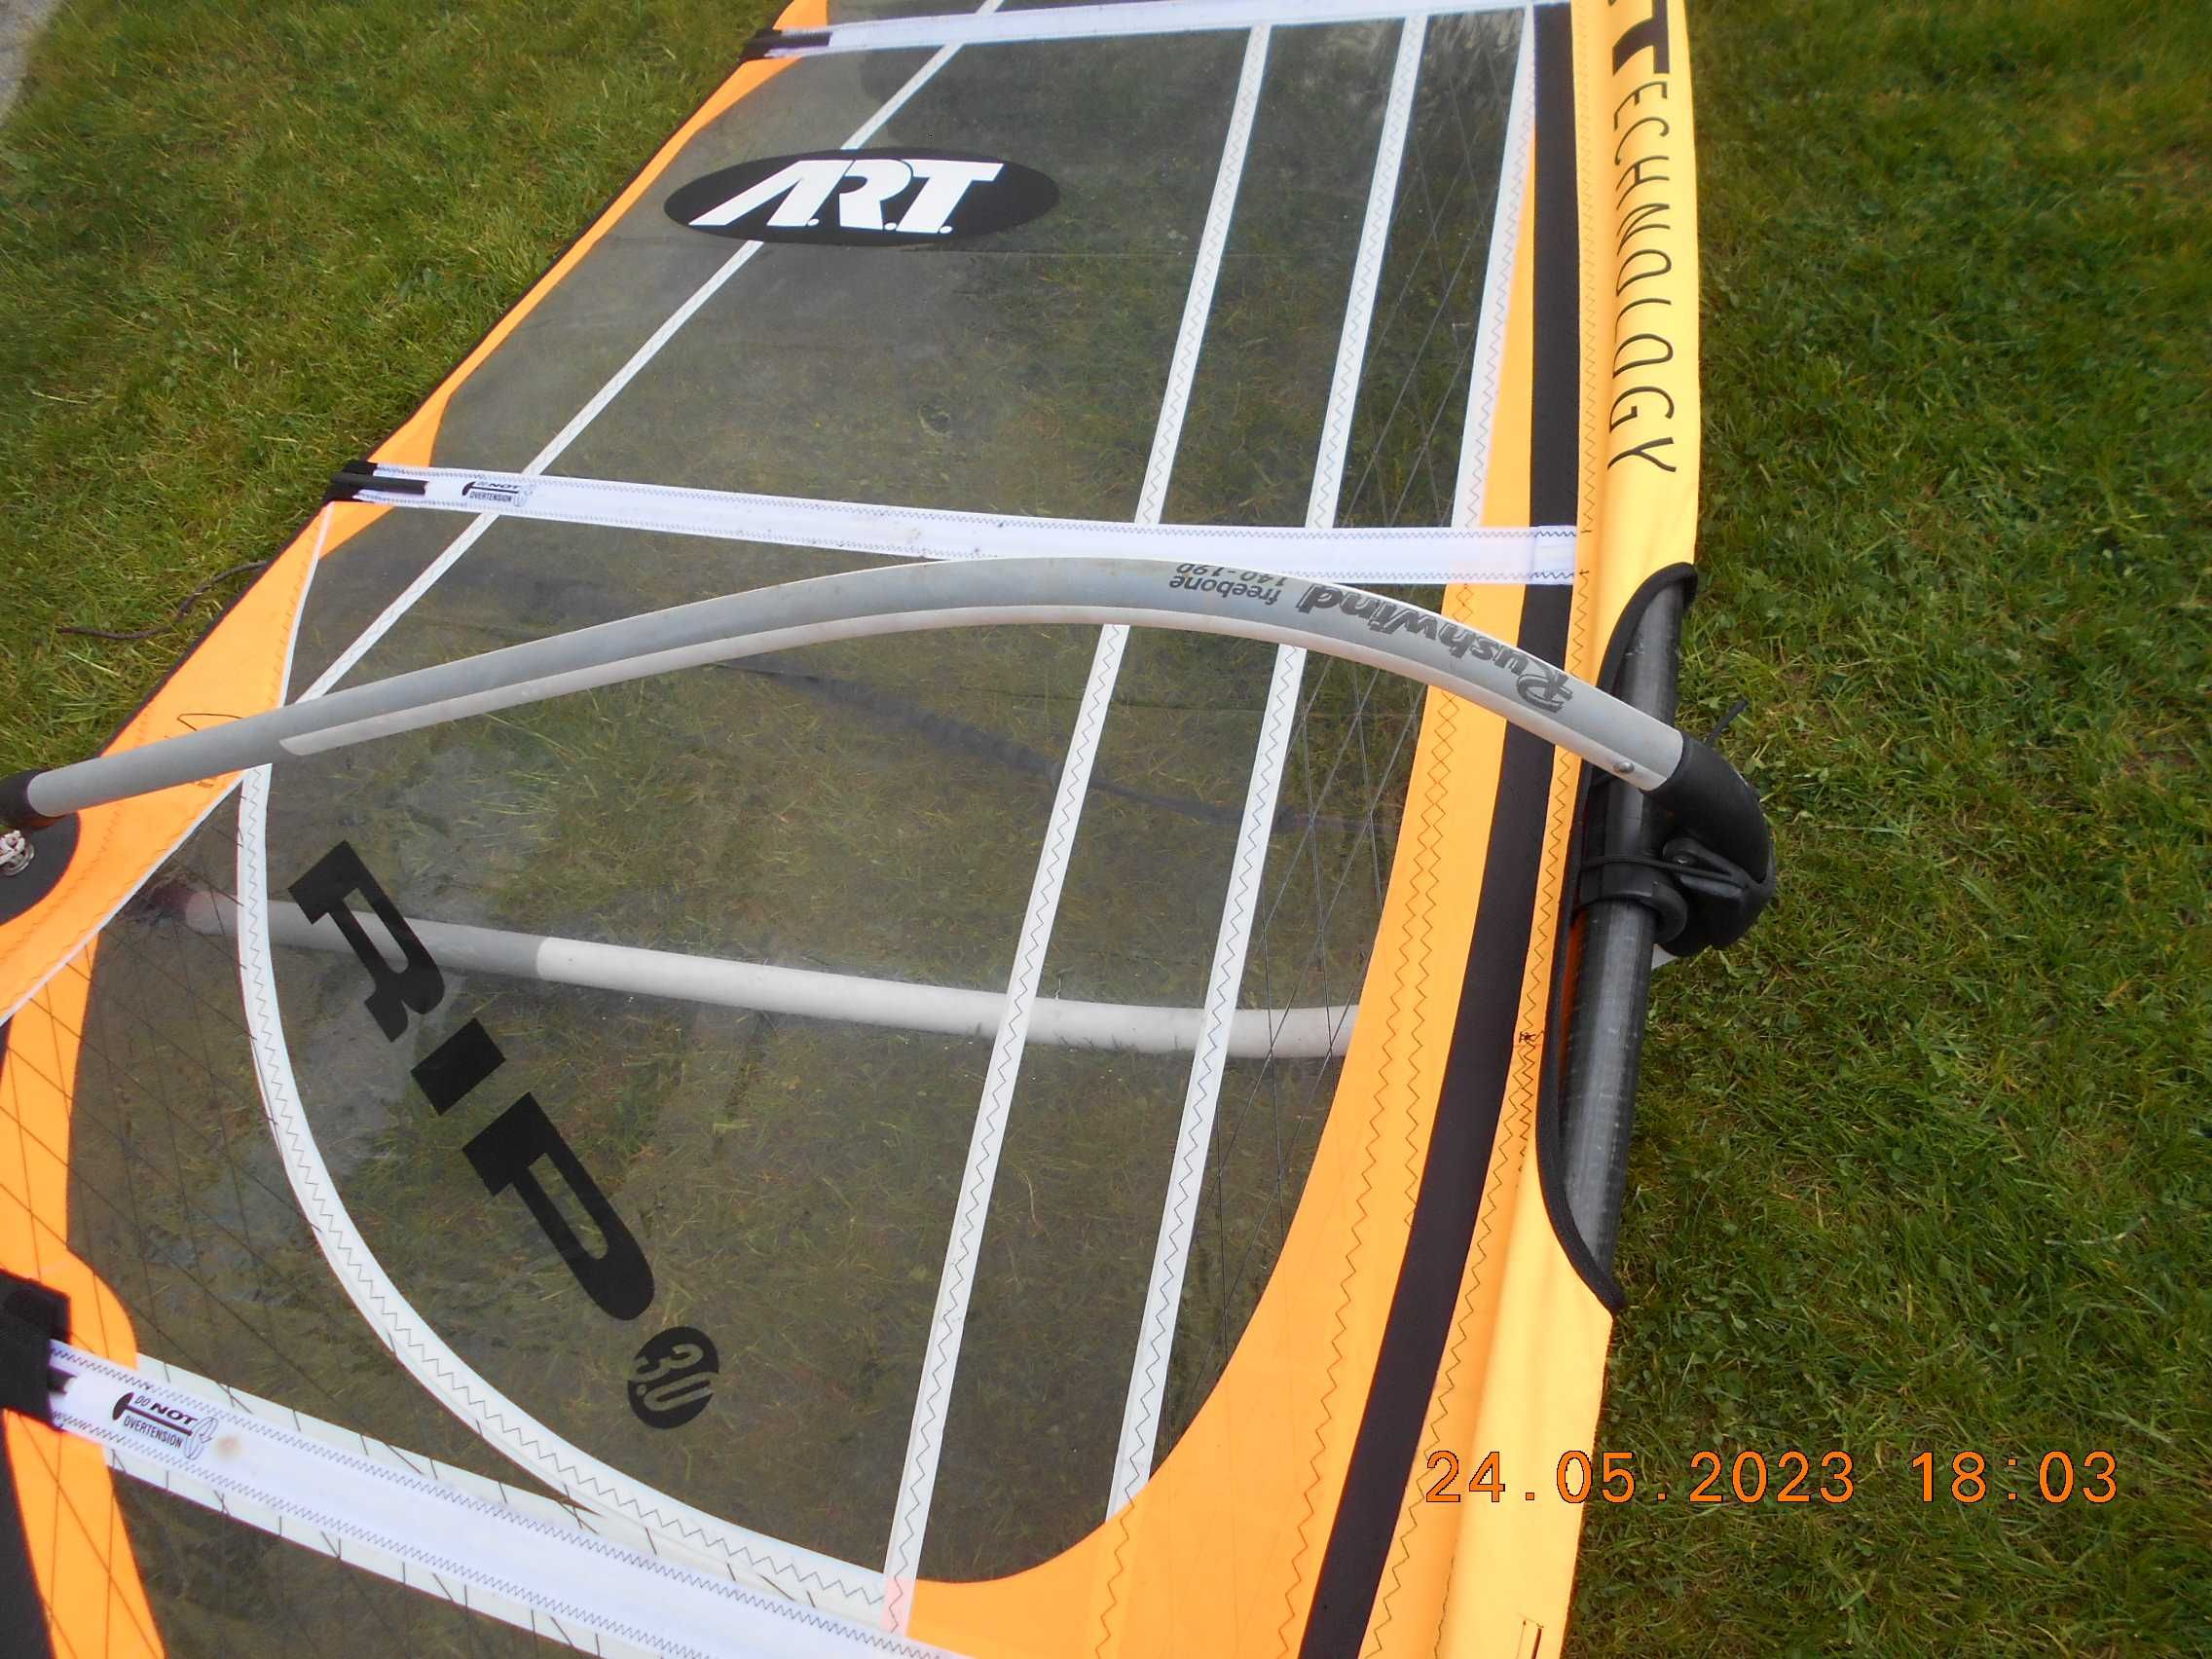 zetaw windsurfingowy do nauki dla kogoś o wadze 65 kg